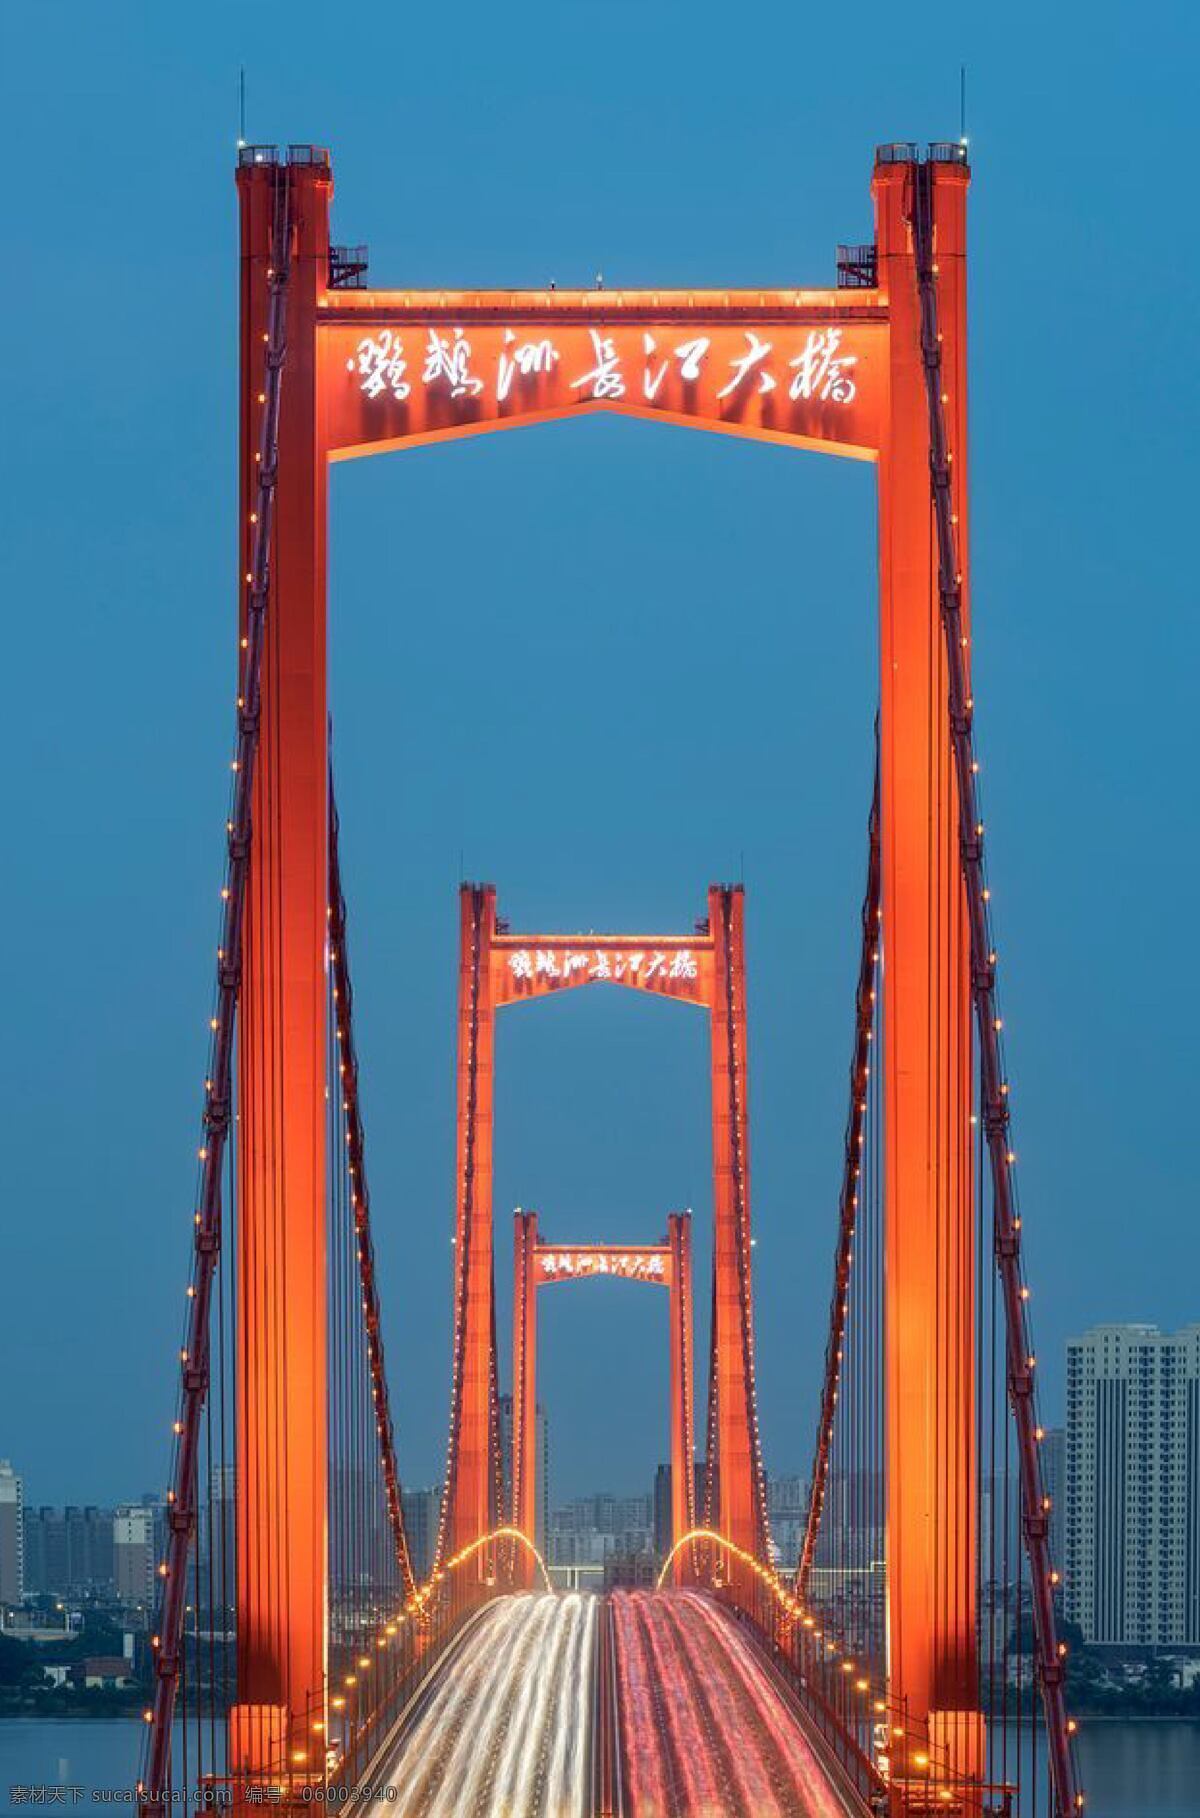 武汉大桥 武汉 疫情 爱心 海报素材 病情 自然景观 建筑景观